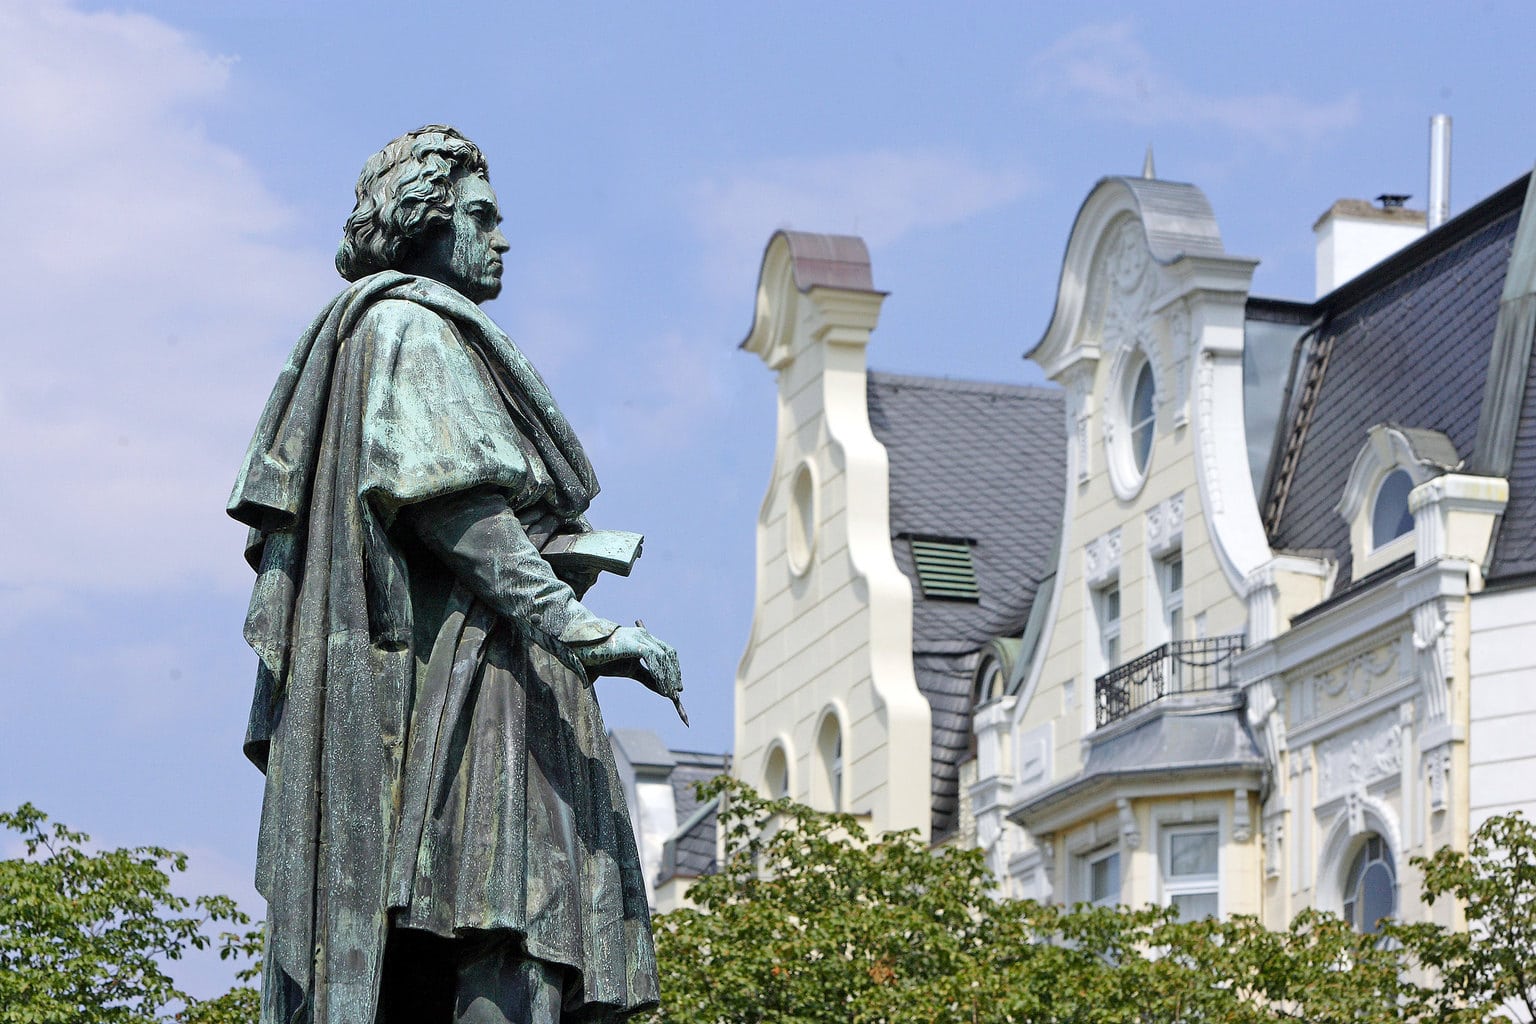 Standbeeld van Beethoven, de meest beroemde zoon van de stad Bonn